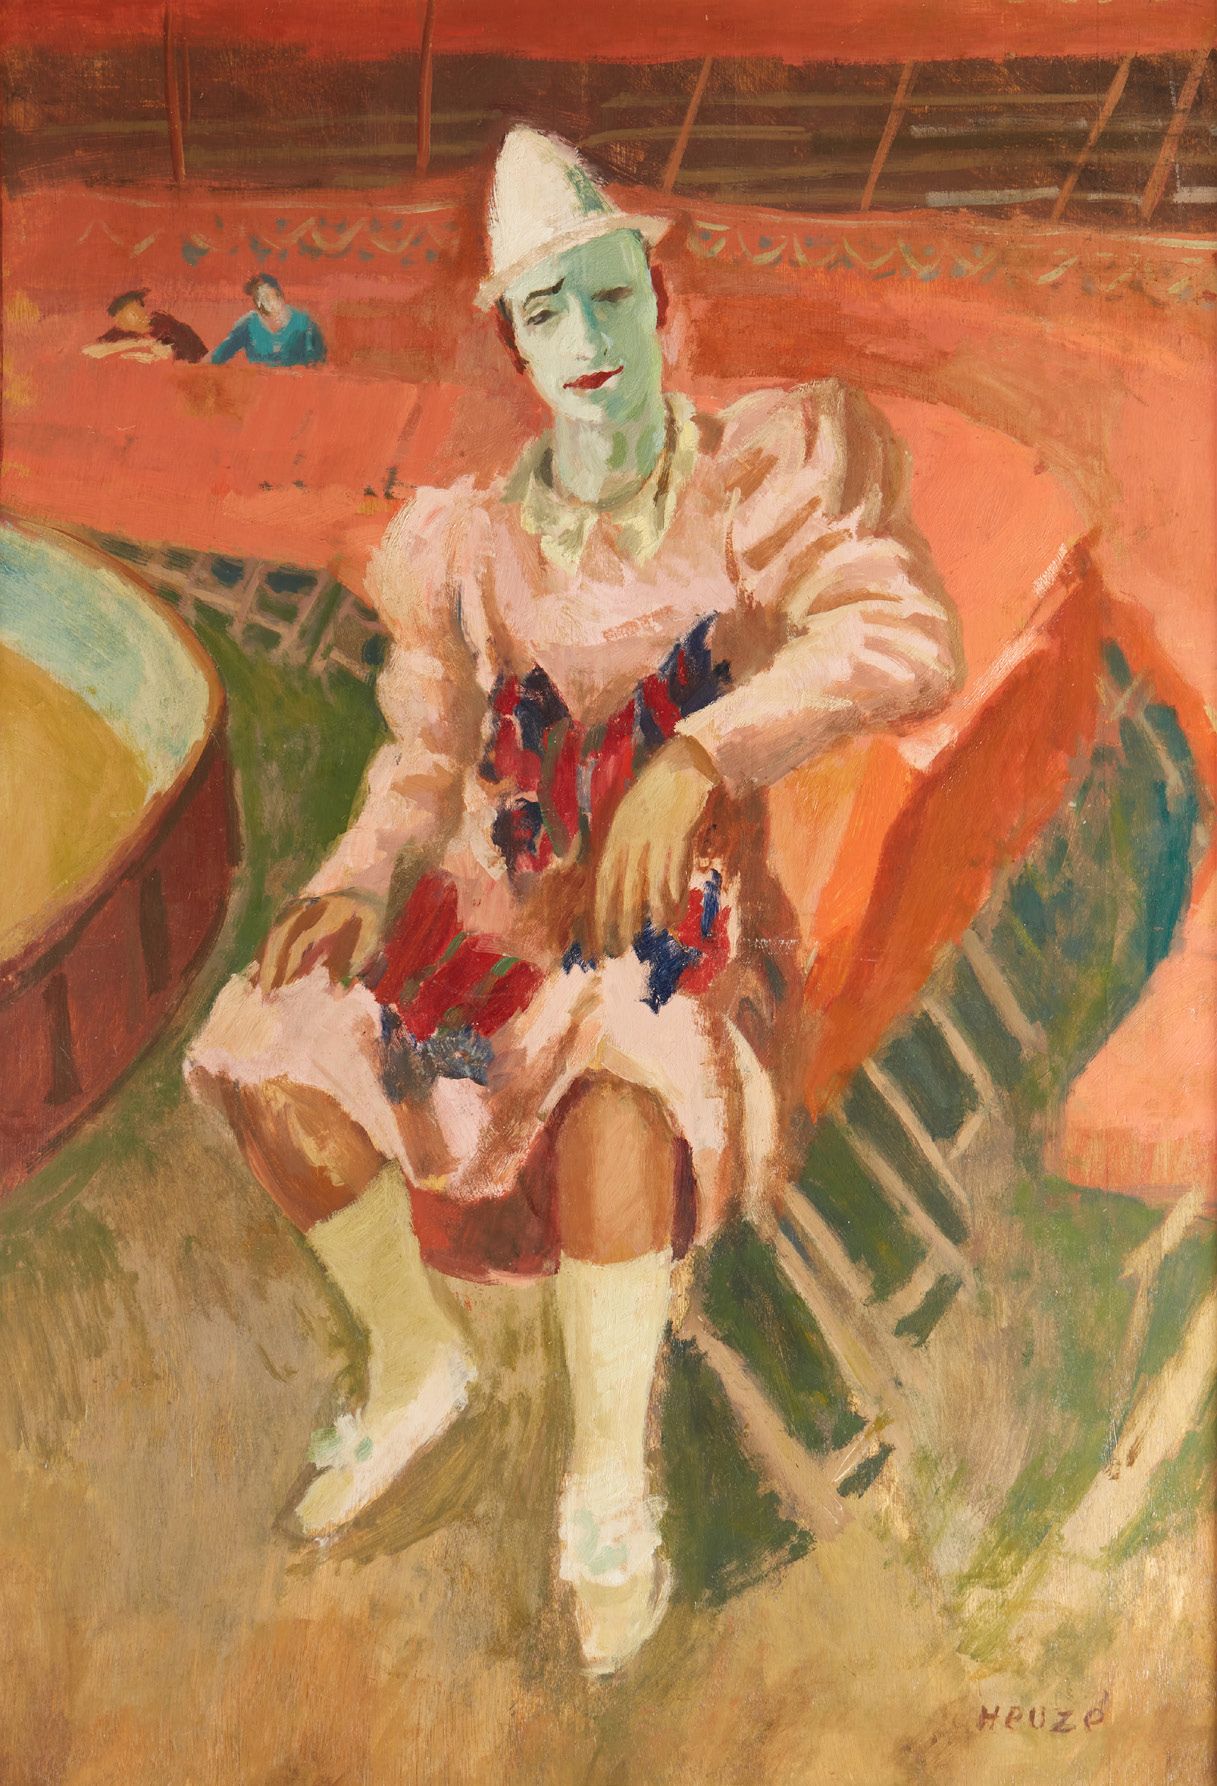 Edmond Amédée HEUZÉ (1884-1967) 坐着的小丑
板上油画
108 x 77 cm